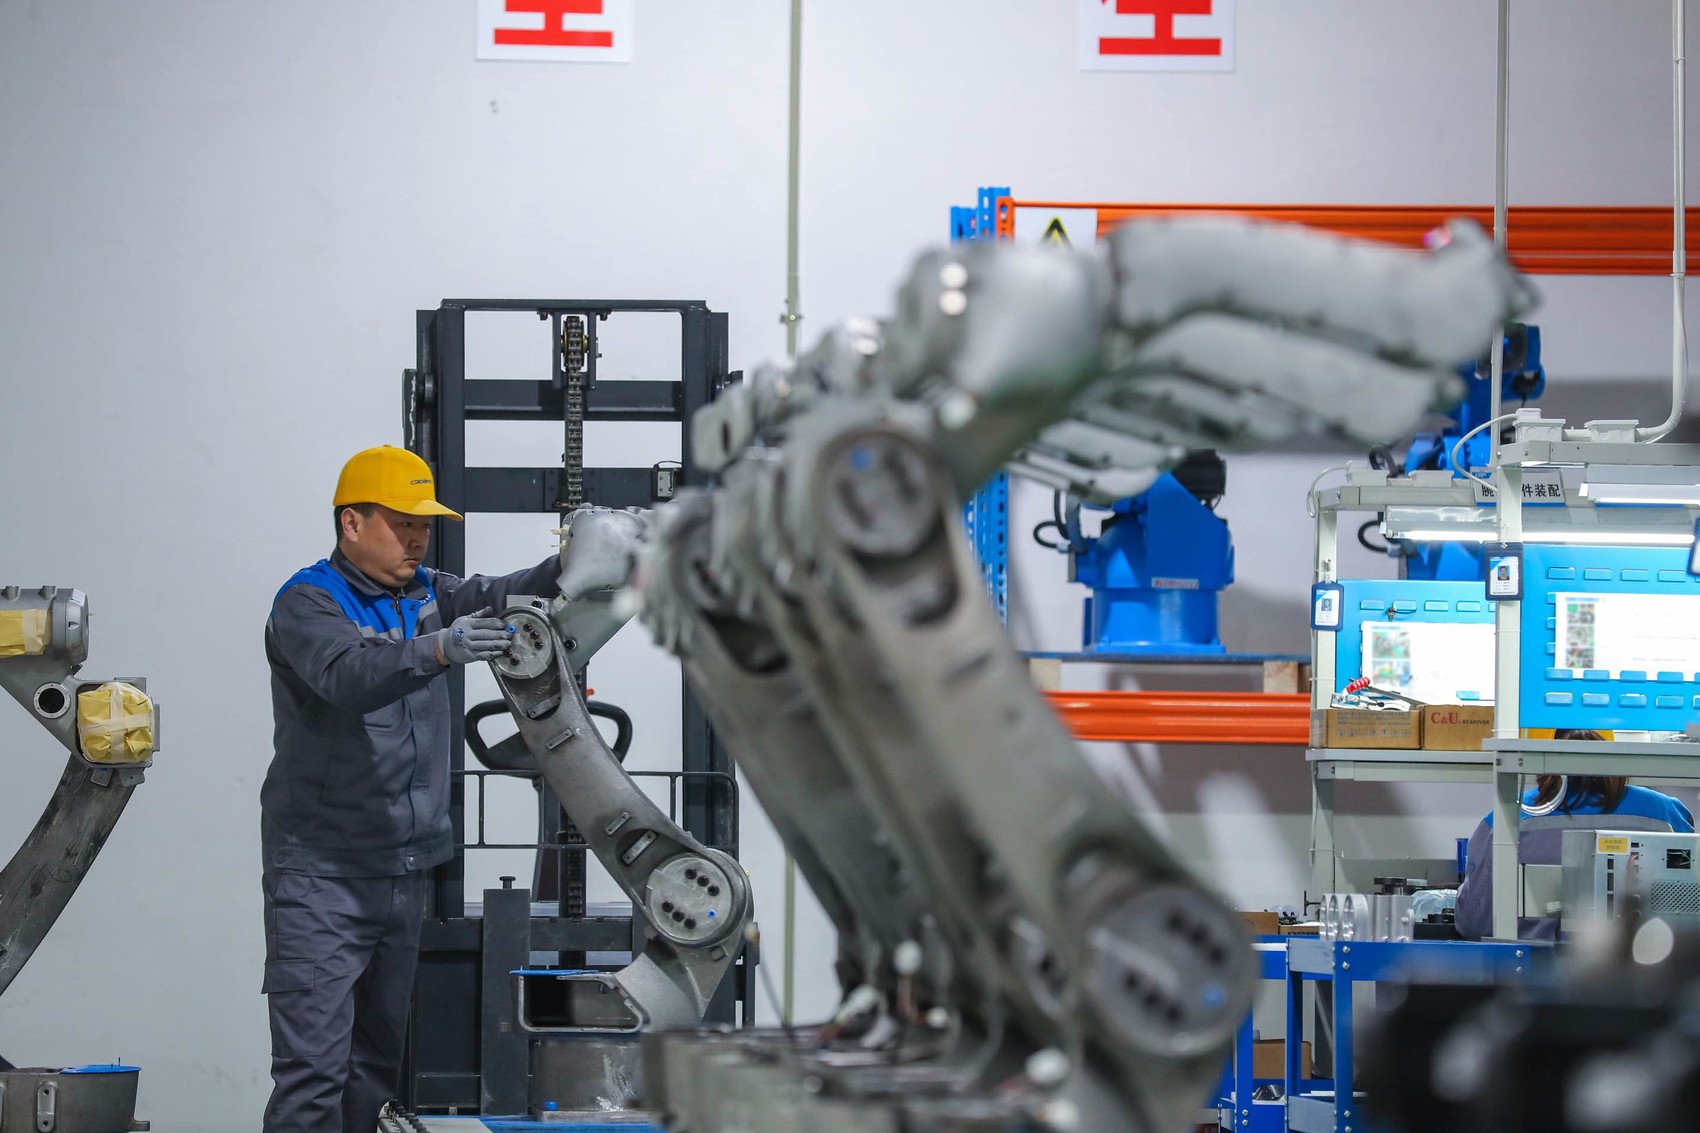 成都卡诺普机器人技术股份有限公司生产线。受访者供图